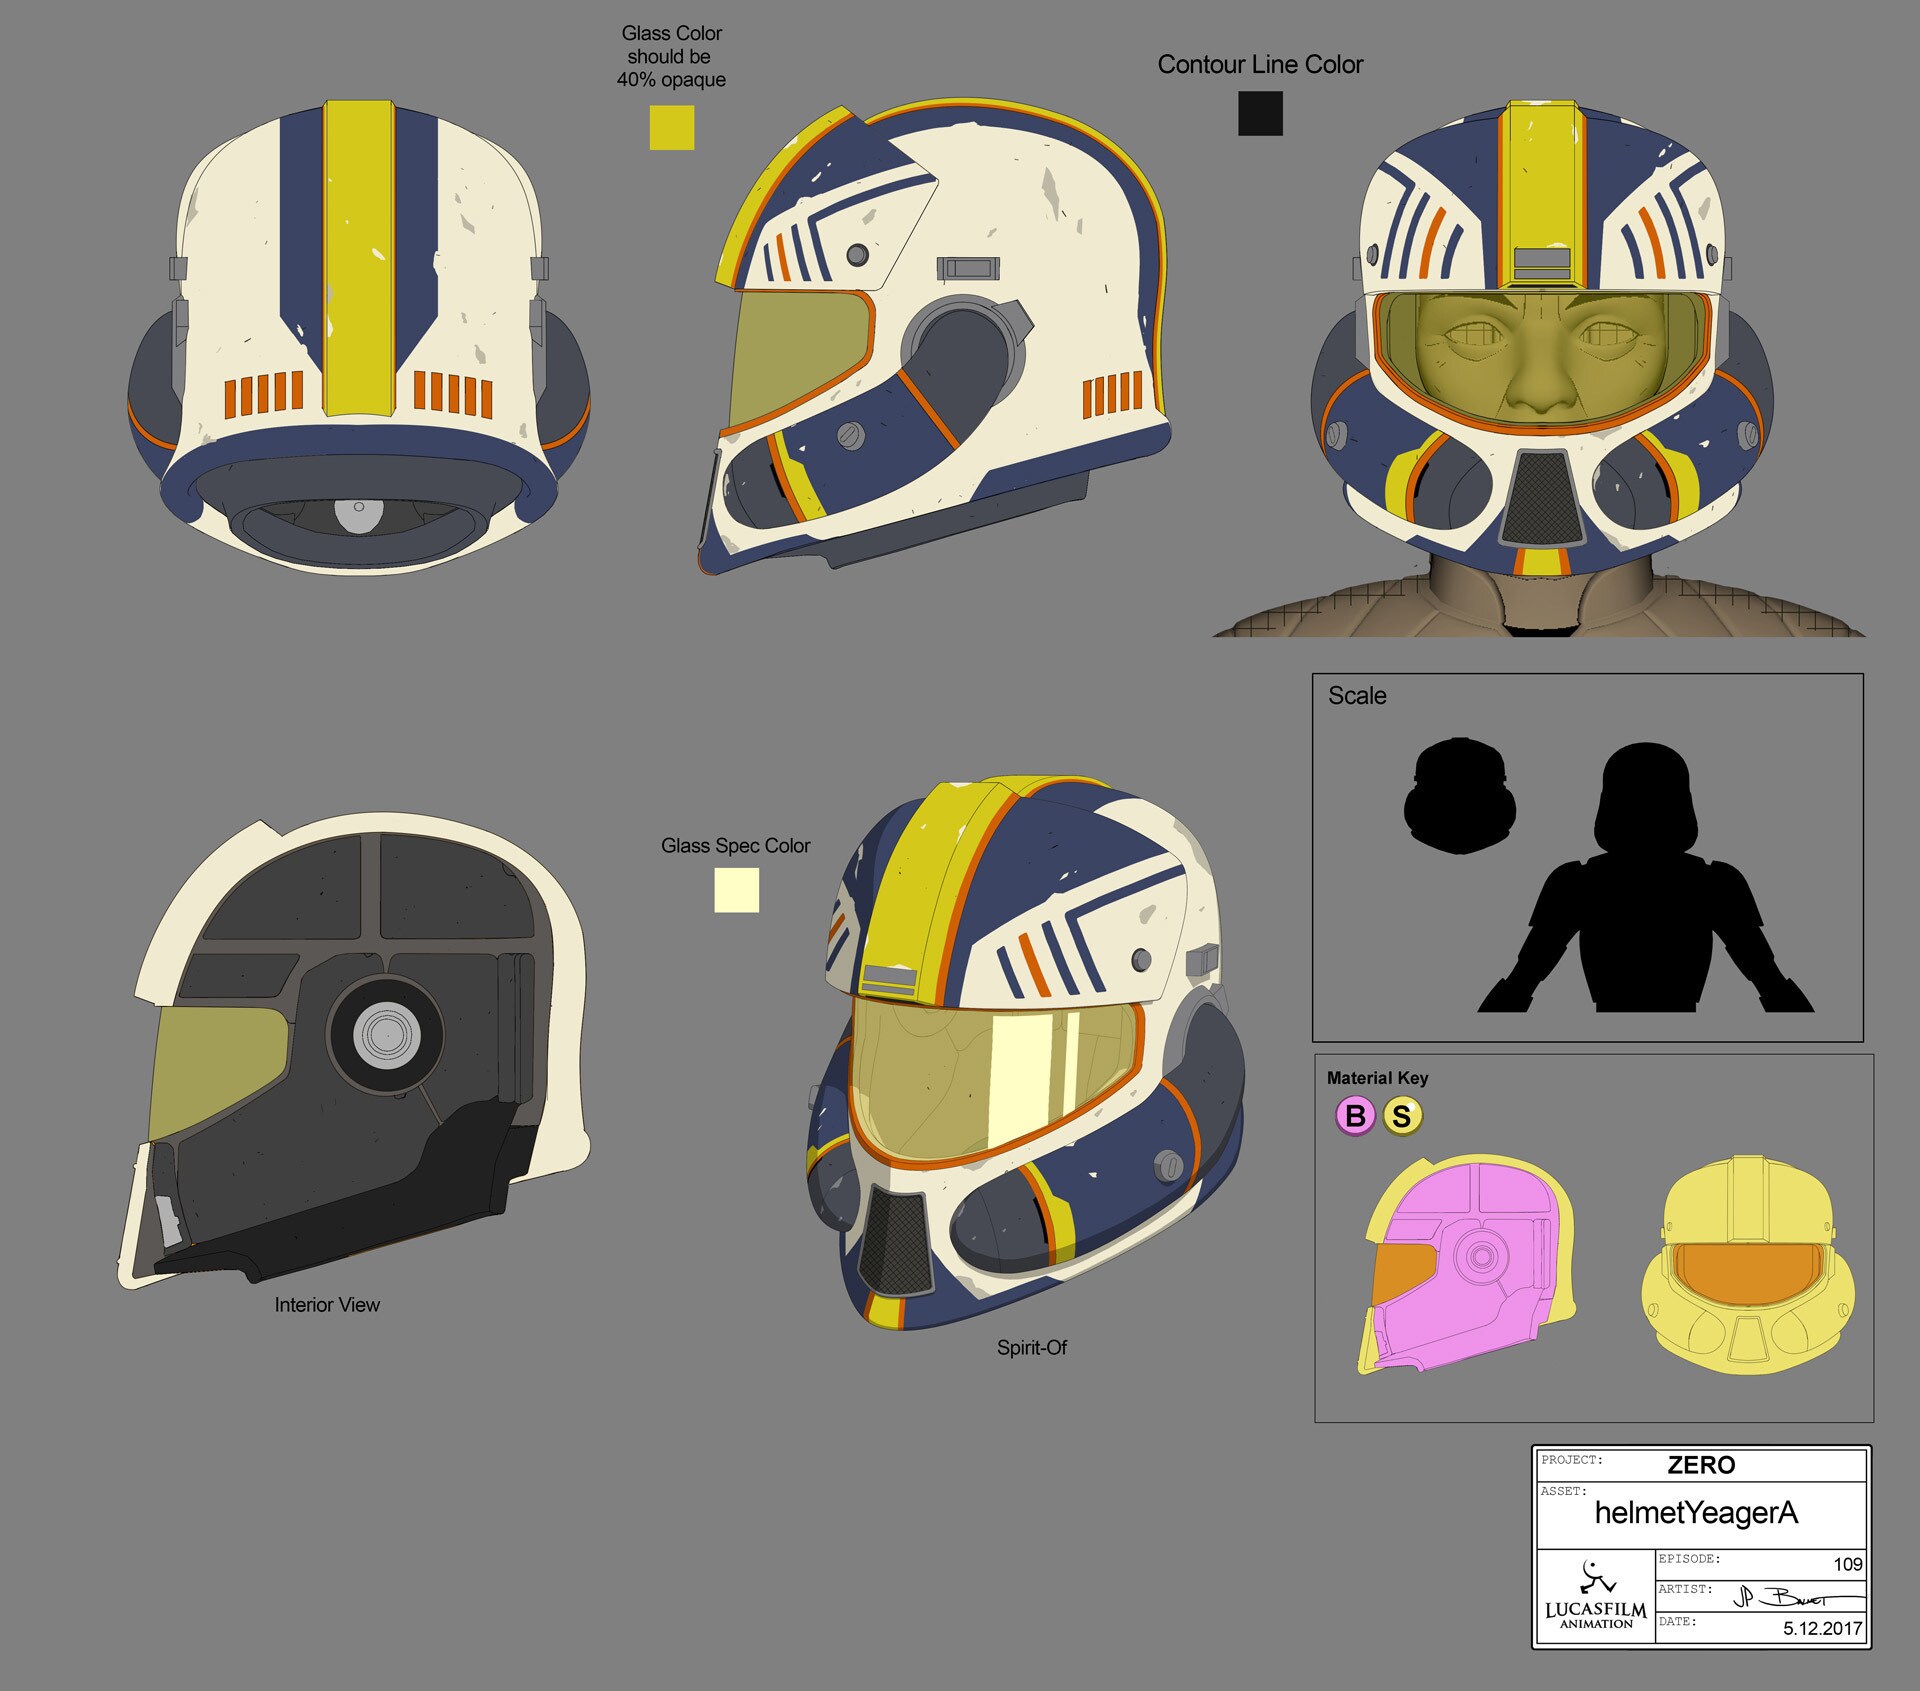 Yeager's helmet by JP Balmet.